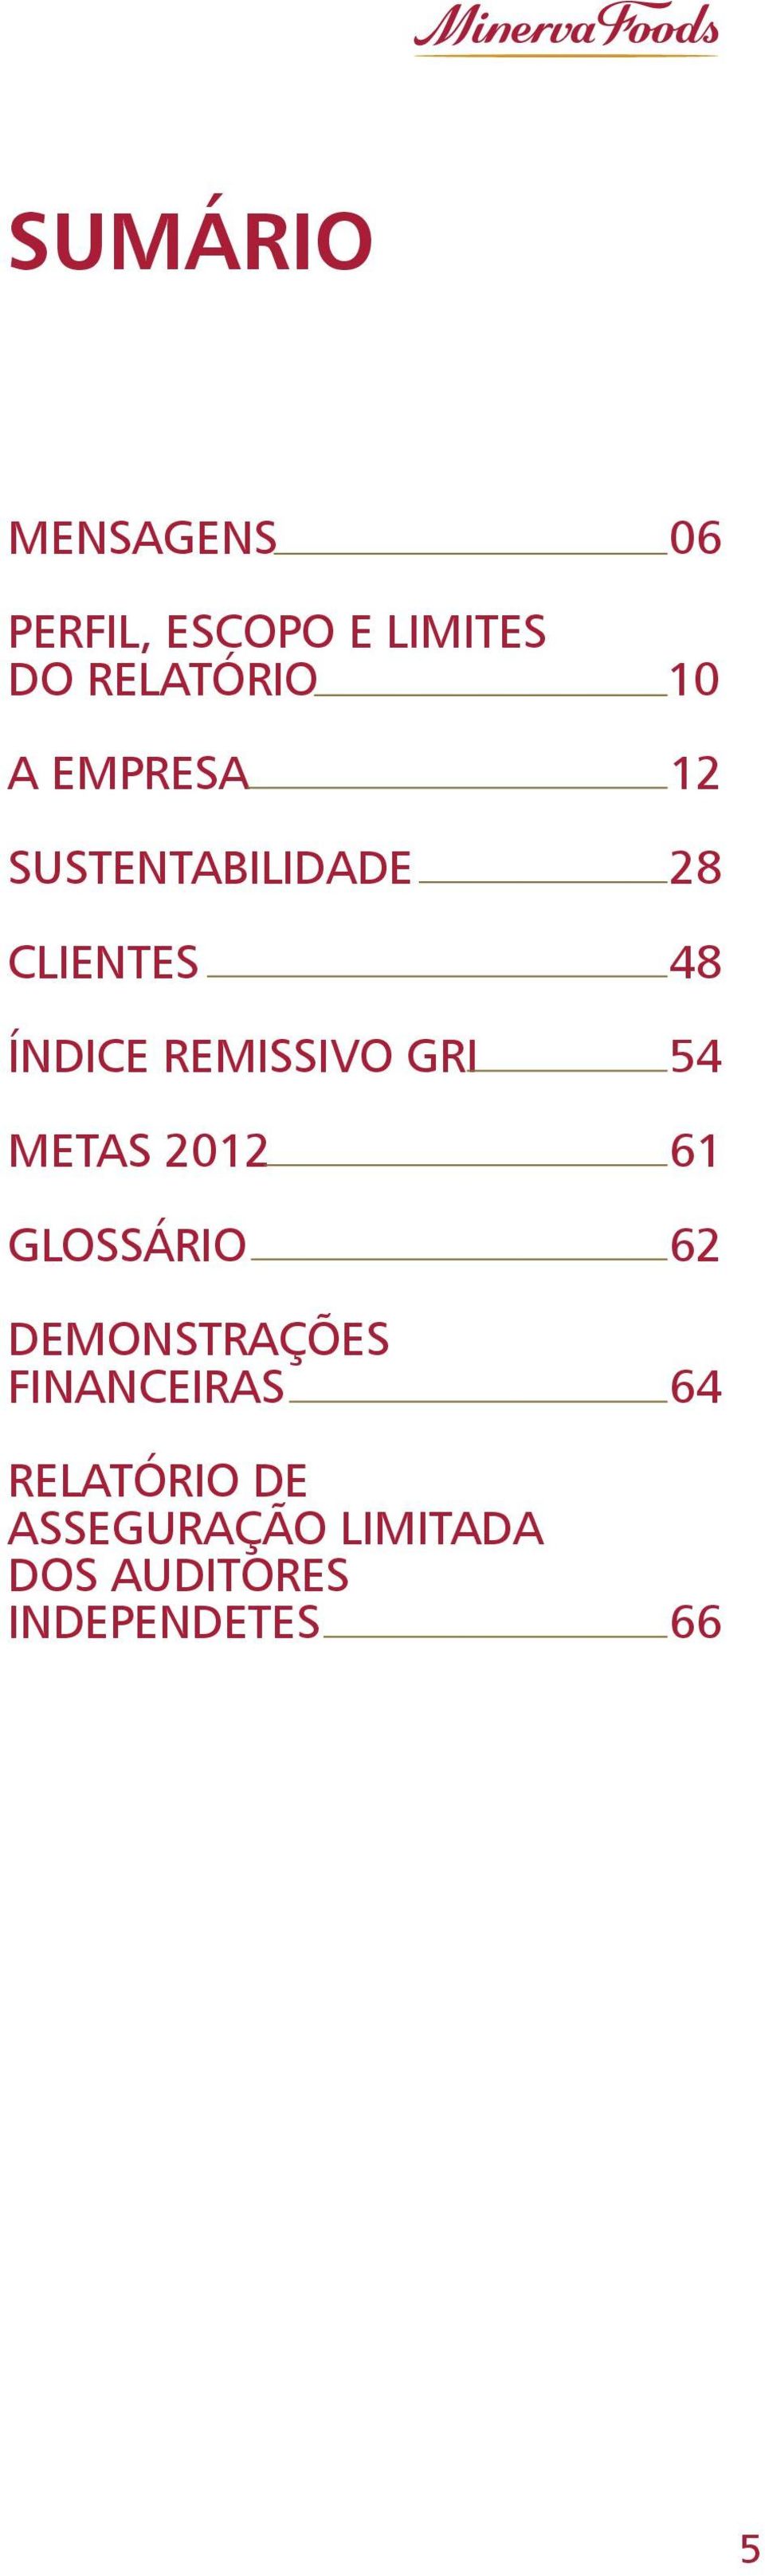 2012 glossário demonstrações financeiras relatório DE